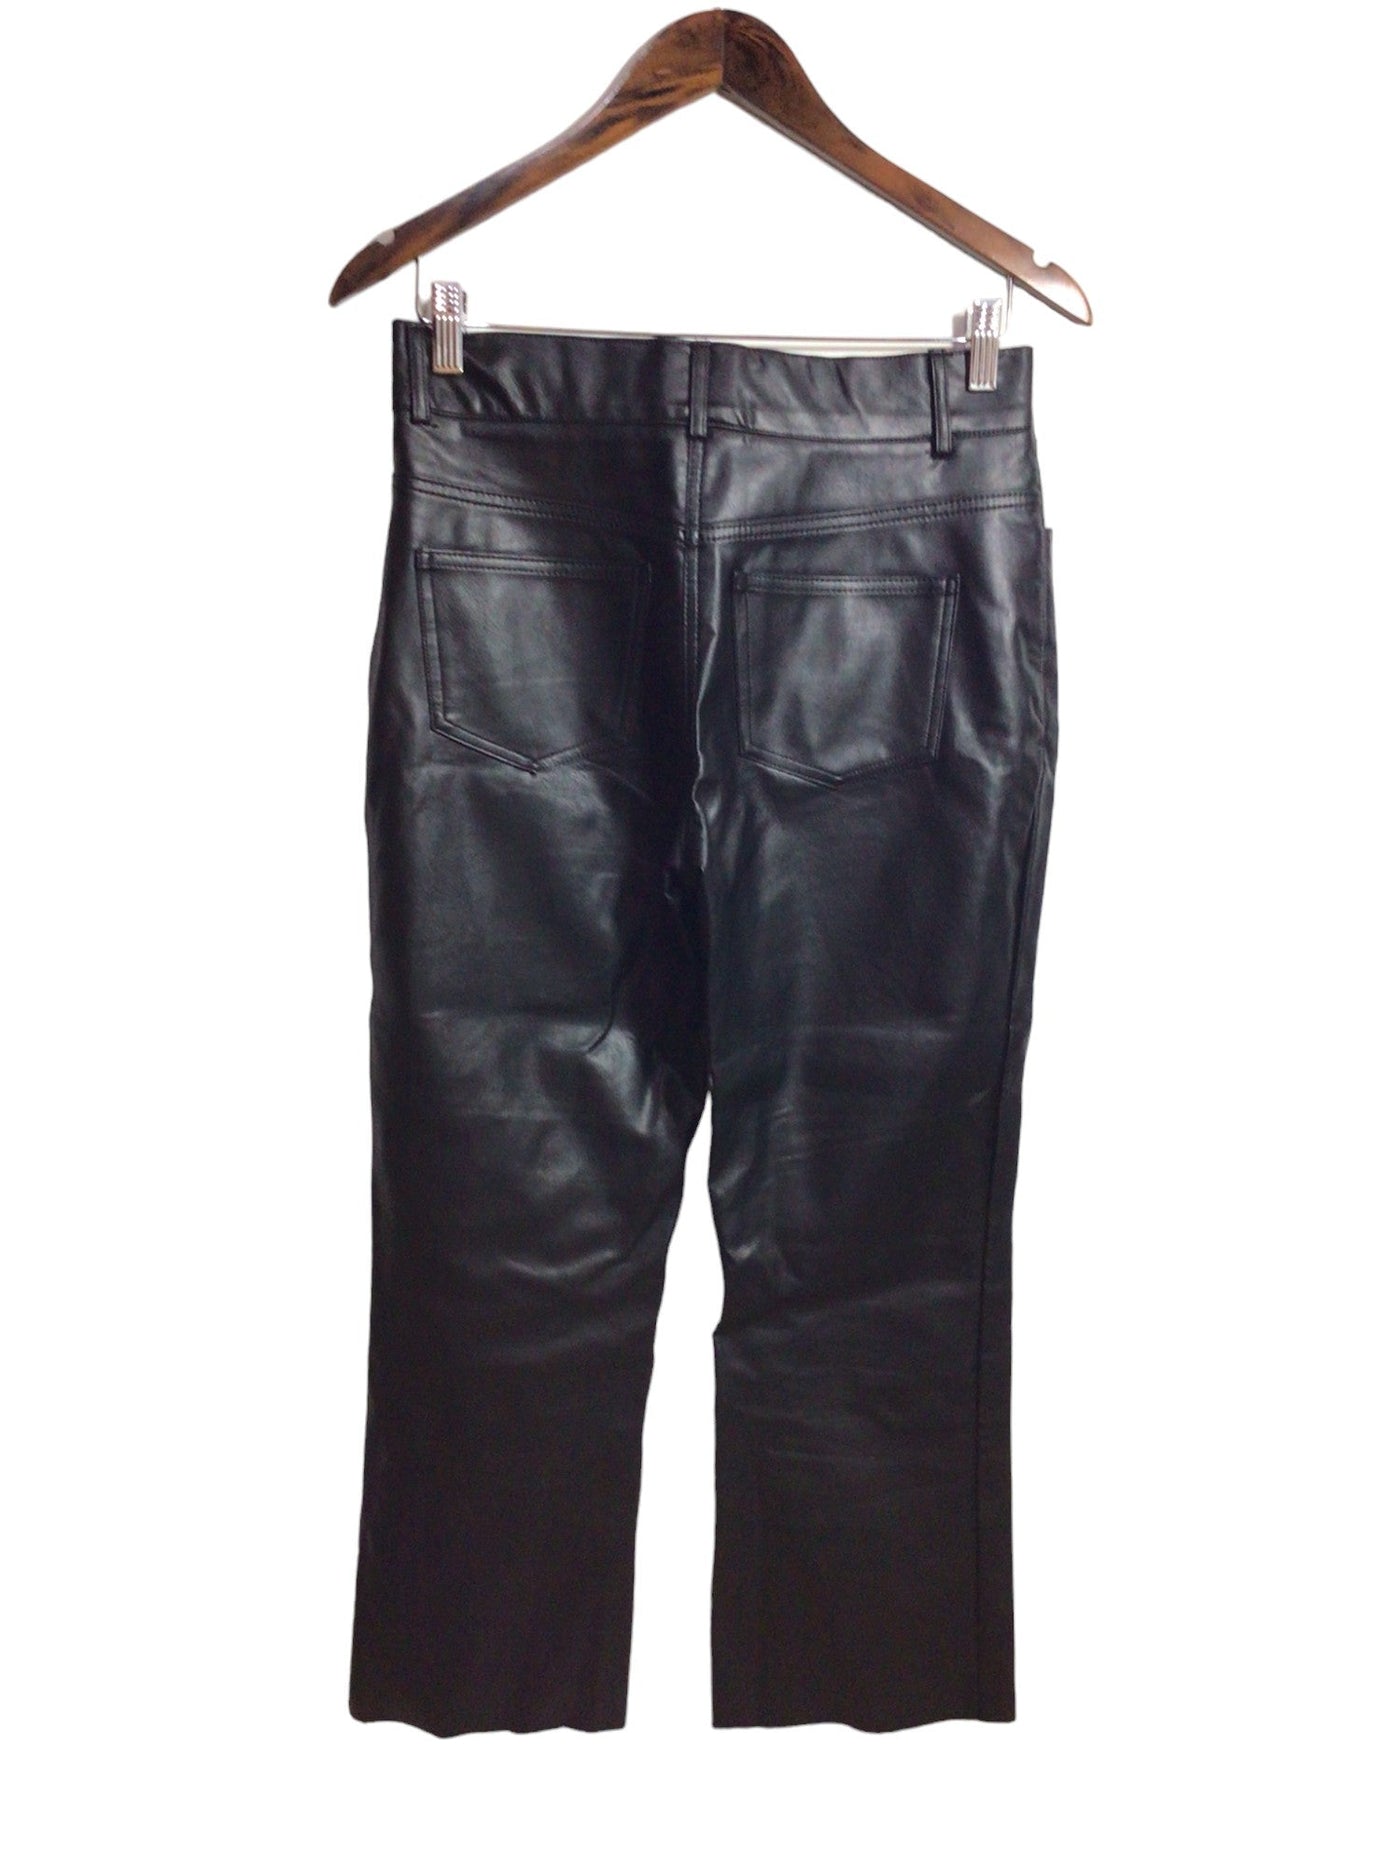 DELUC Women Work Pants Regular fit in Black - Size S | 15 $ KOOP